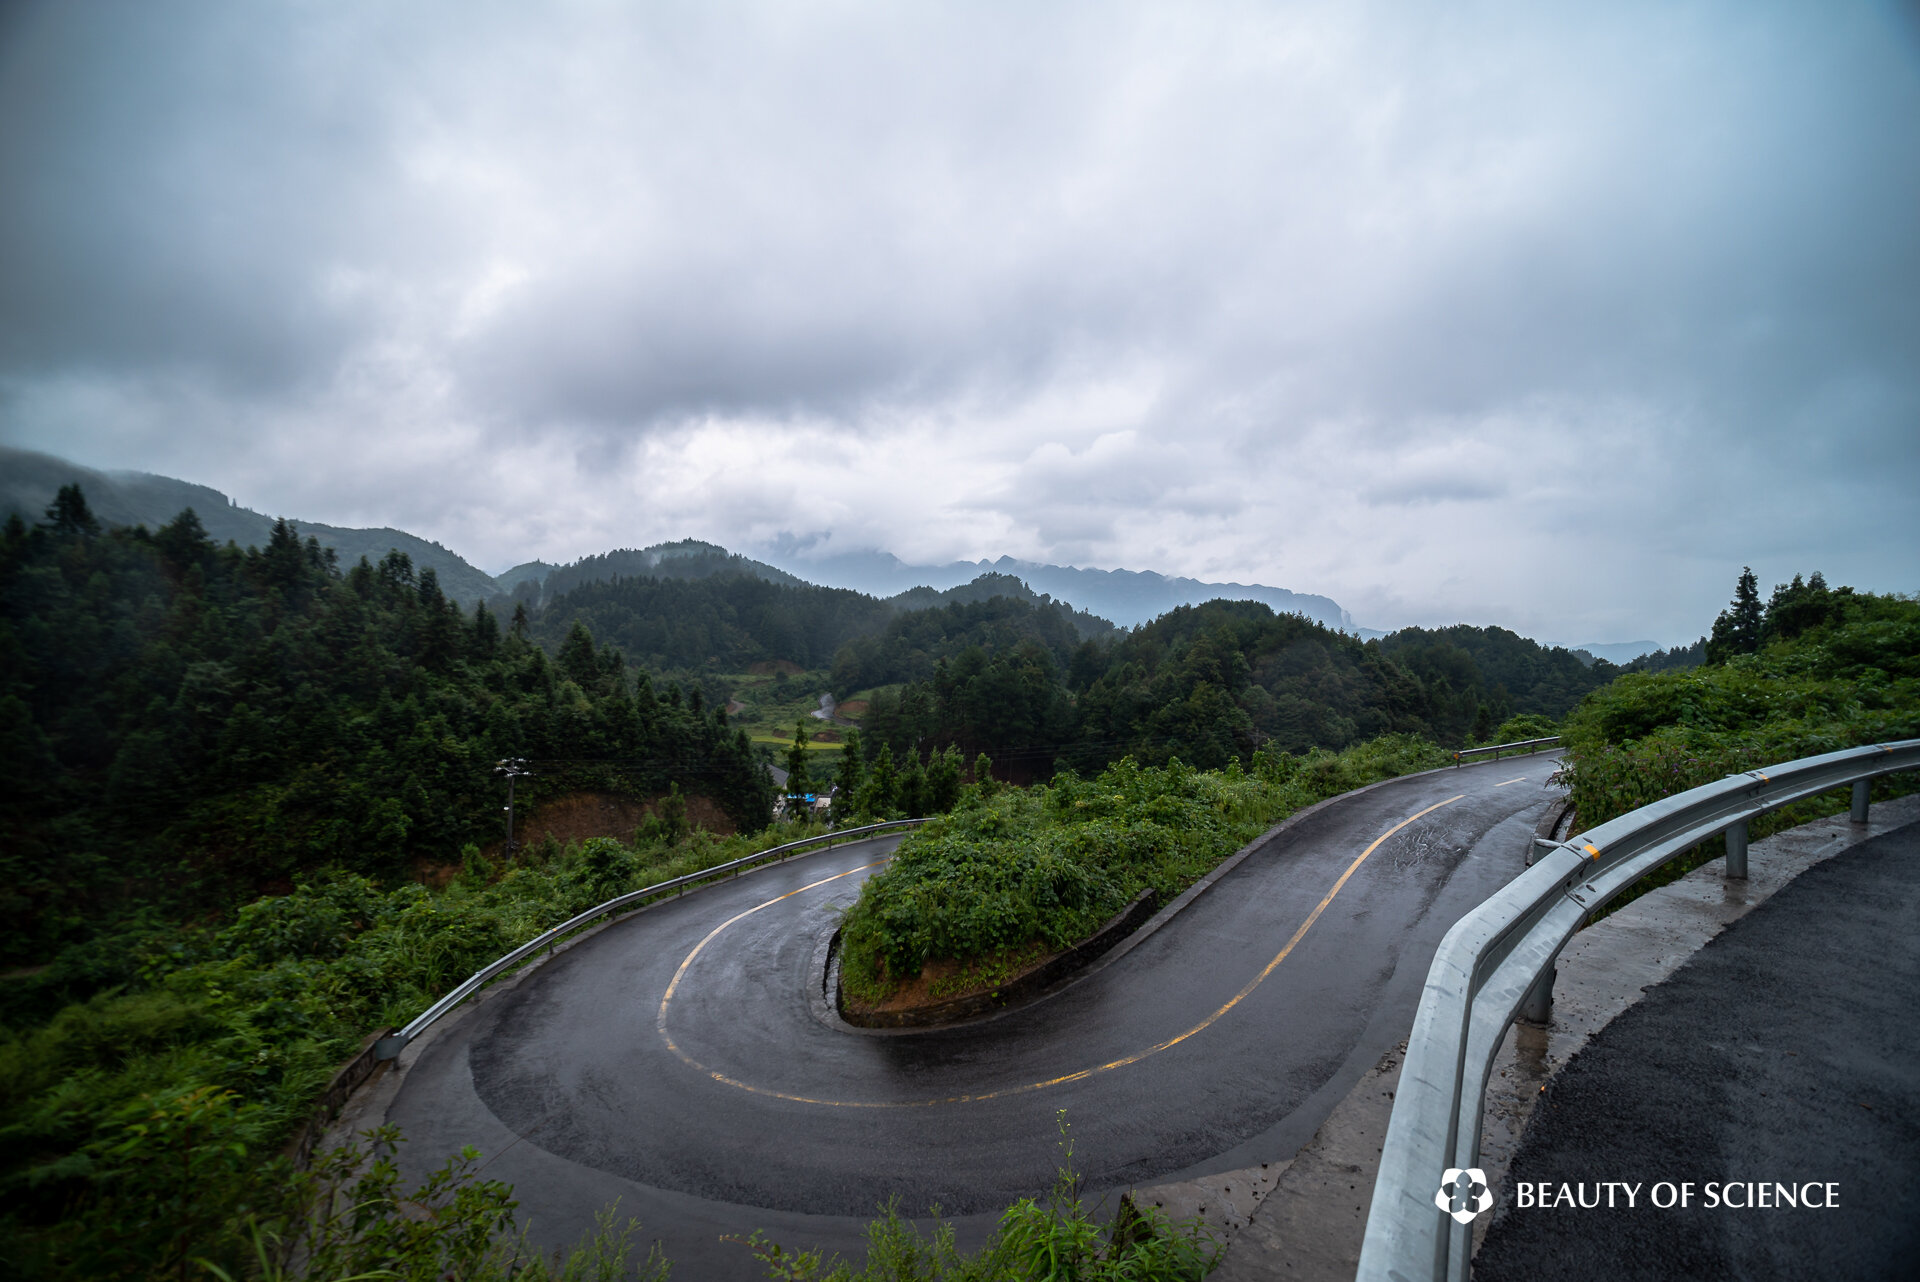 Road in Jinfo Mountain in Nanchuan